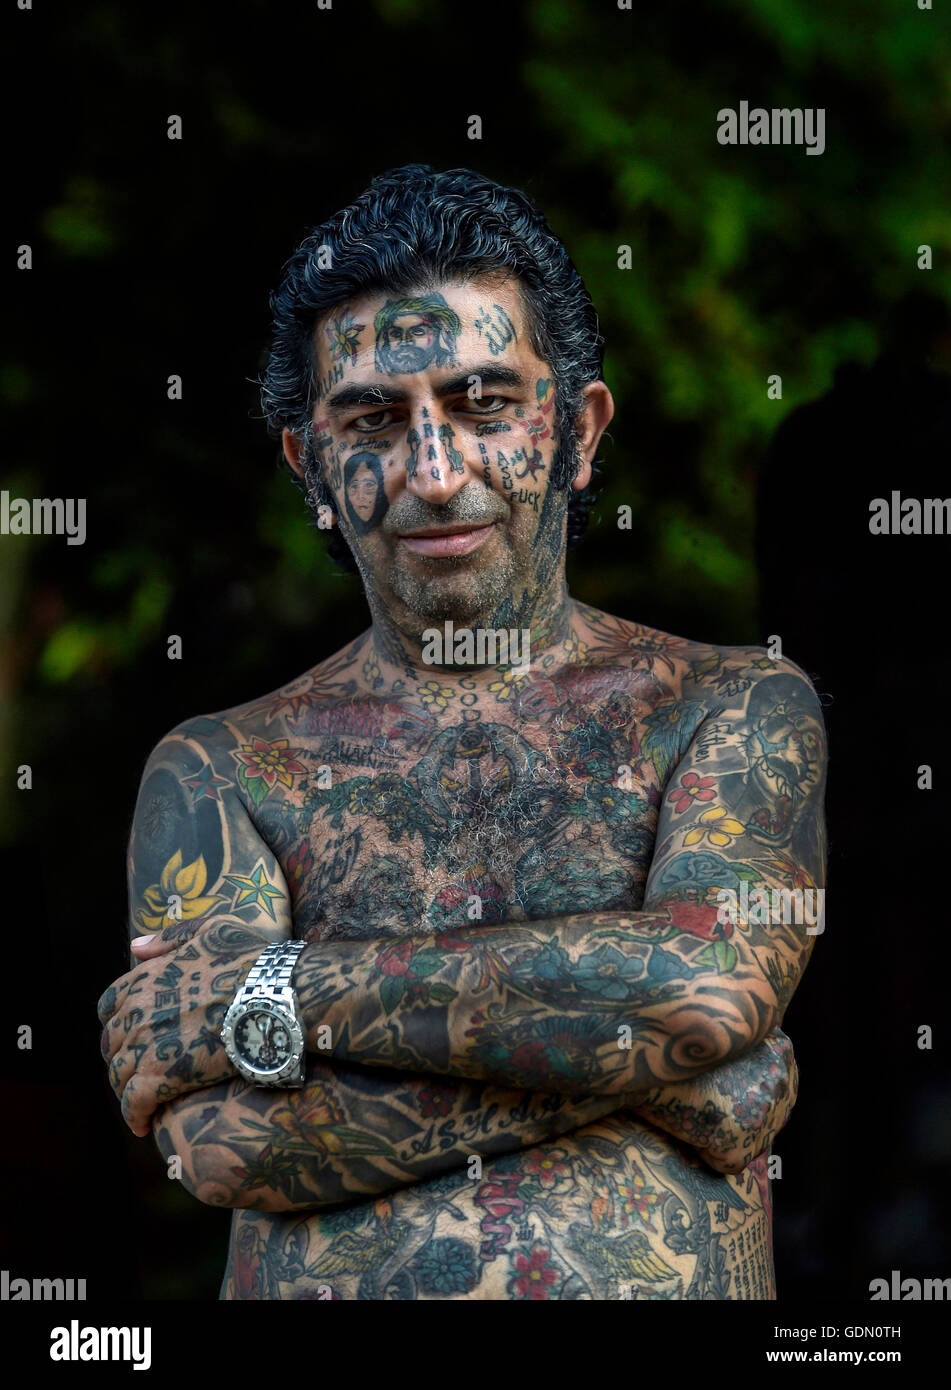 Hombre, árabe con tatuajes por todo su cuerpo, Ko Samui, Tailandia Foto de stock